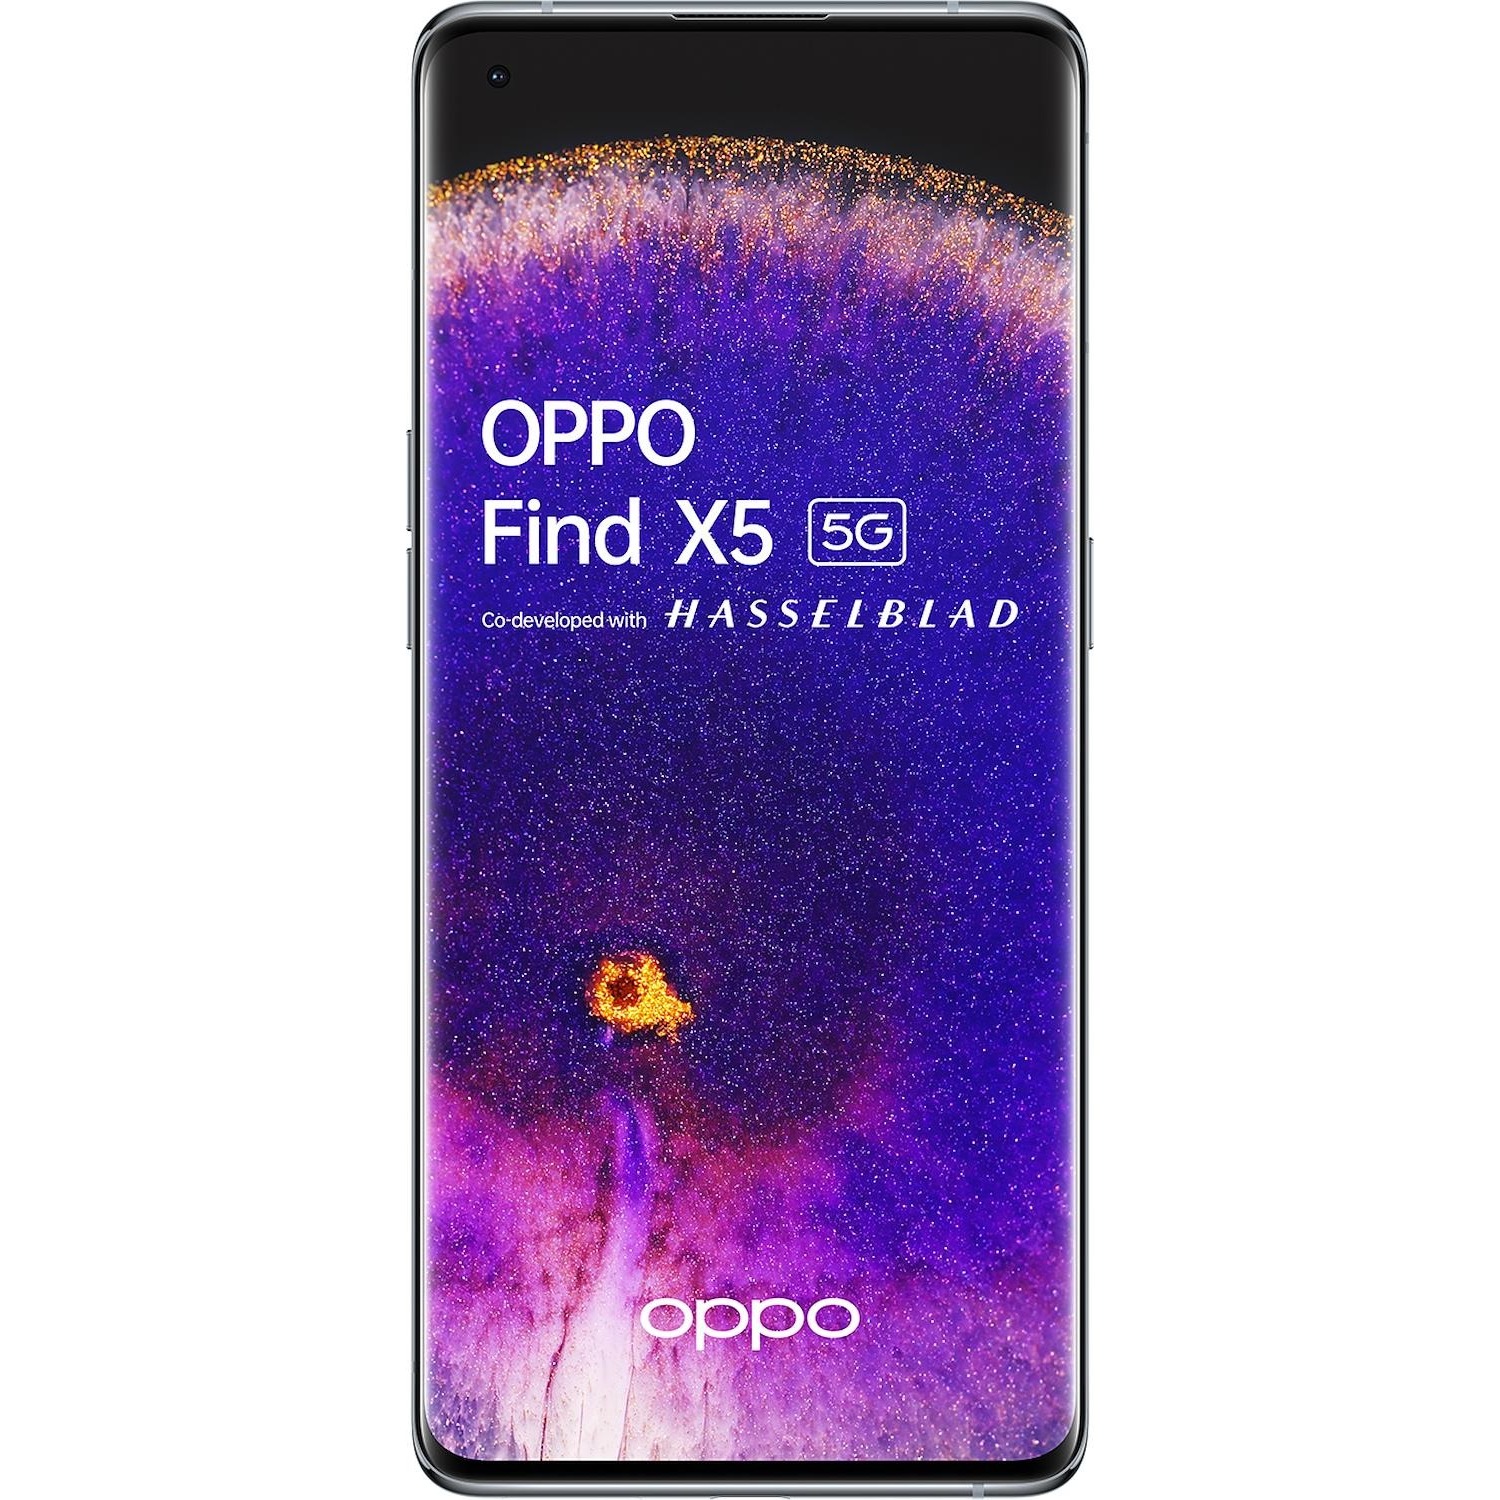 Immagine per Smartphone Oppo Find X5 white bianco da DIMOStore